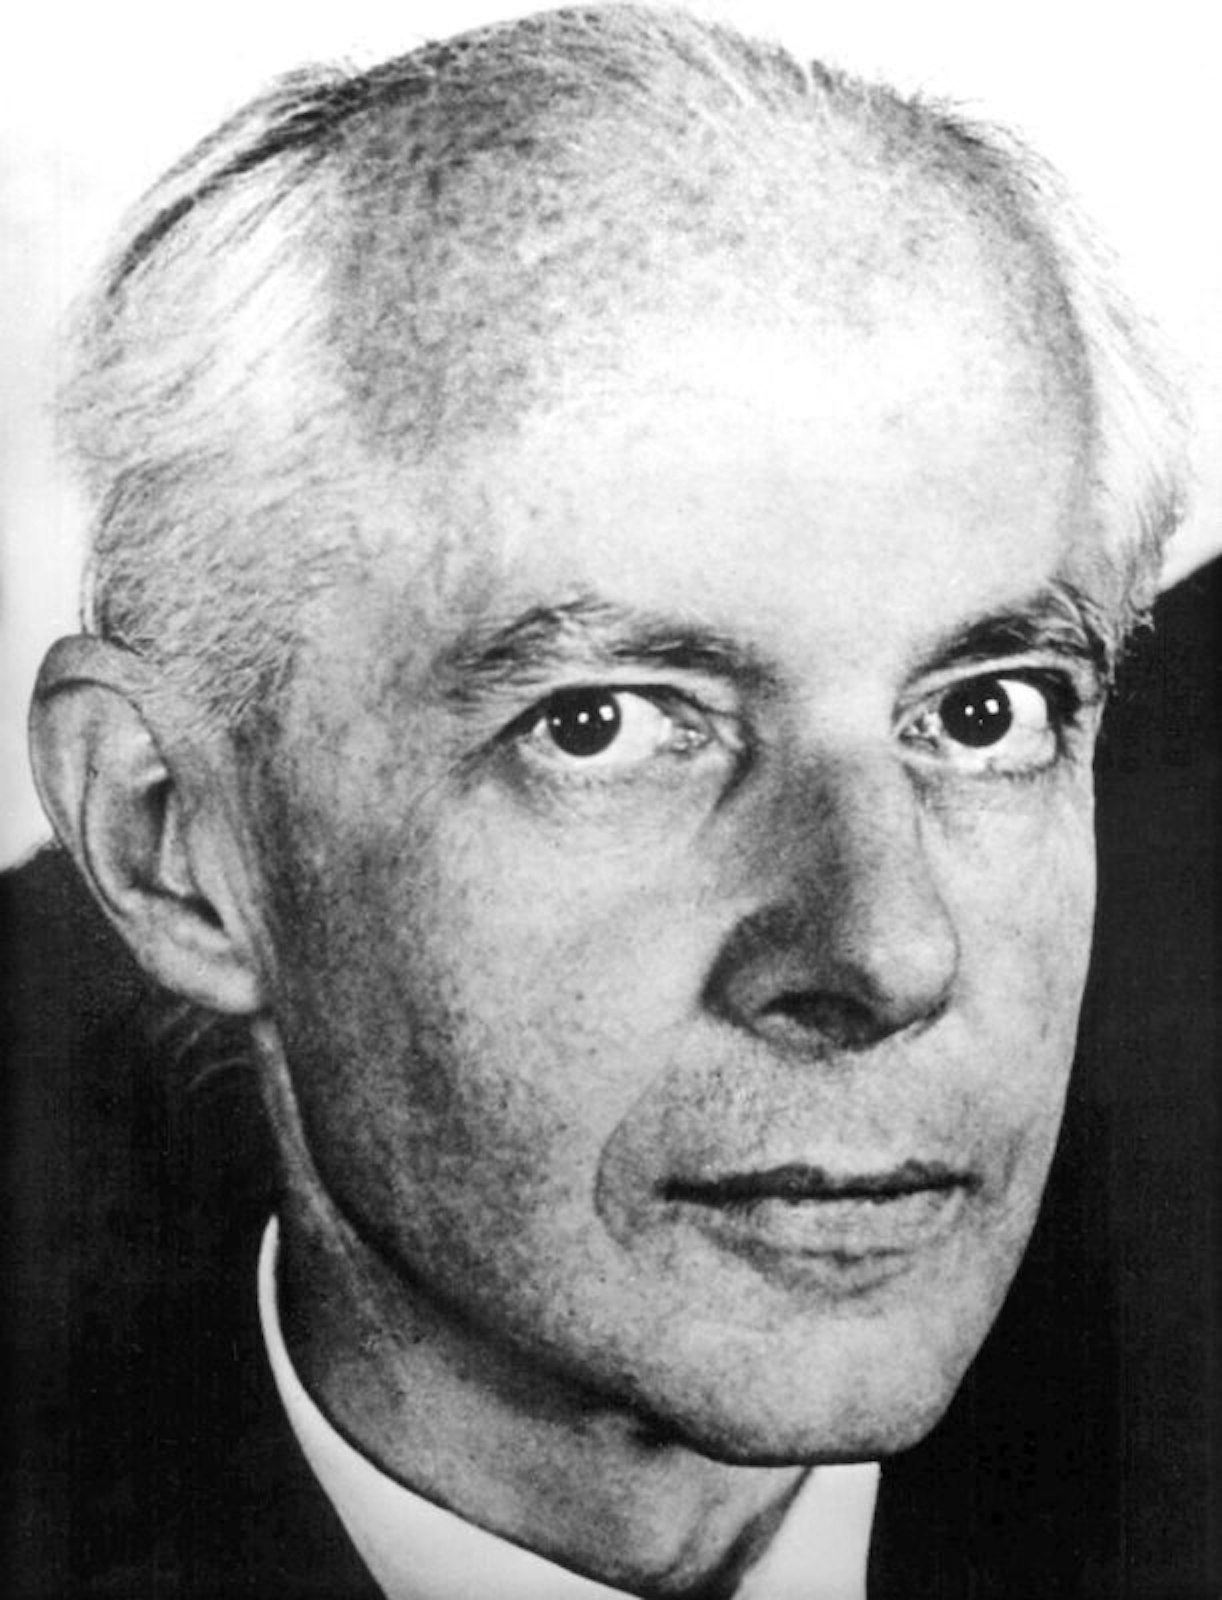 Der ungarische Komponist Bela Bartok (undatiertes Archivbild) wurde 1881 in Ungarn geboren, 1940 ging er ins amerikanische Exil. Er starb am 26. September 1945 verarmt in einem New Yorker Krankenhaus.